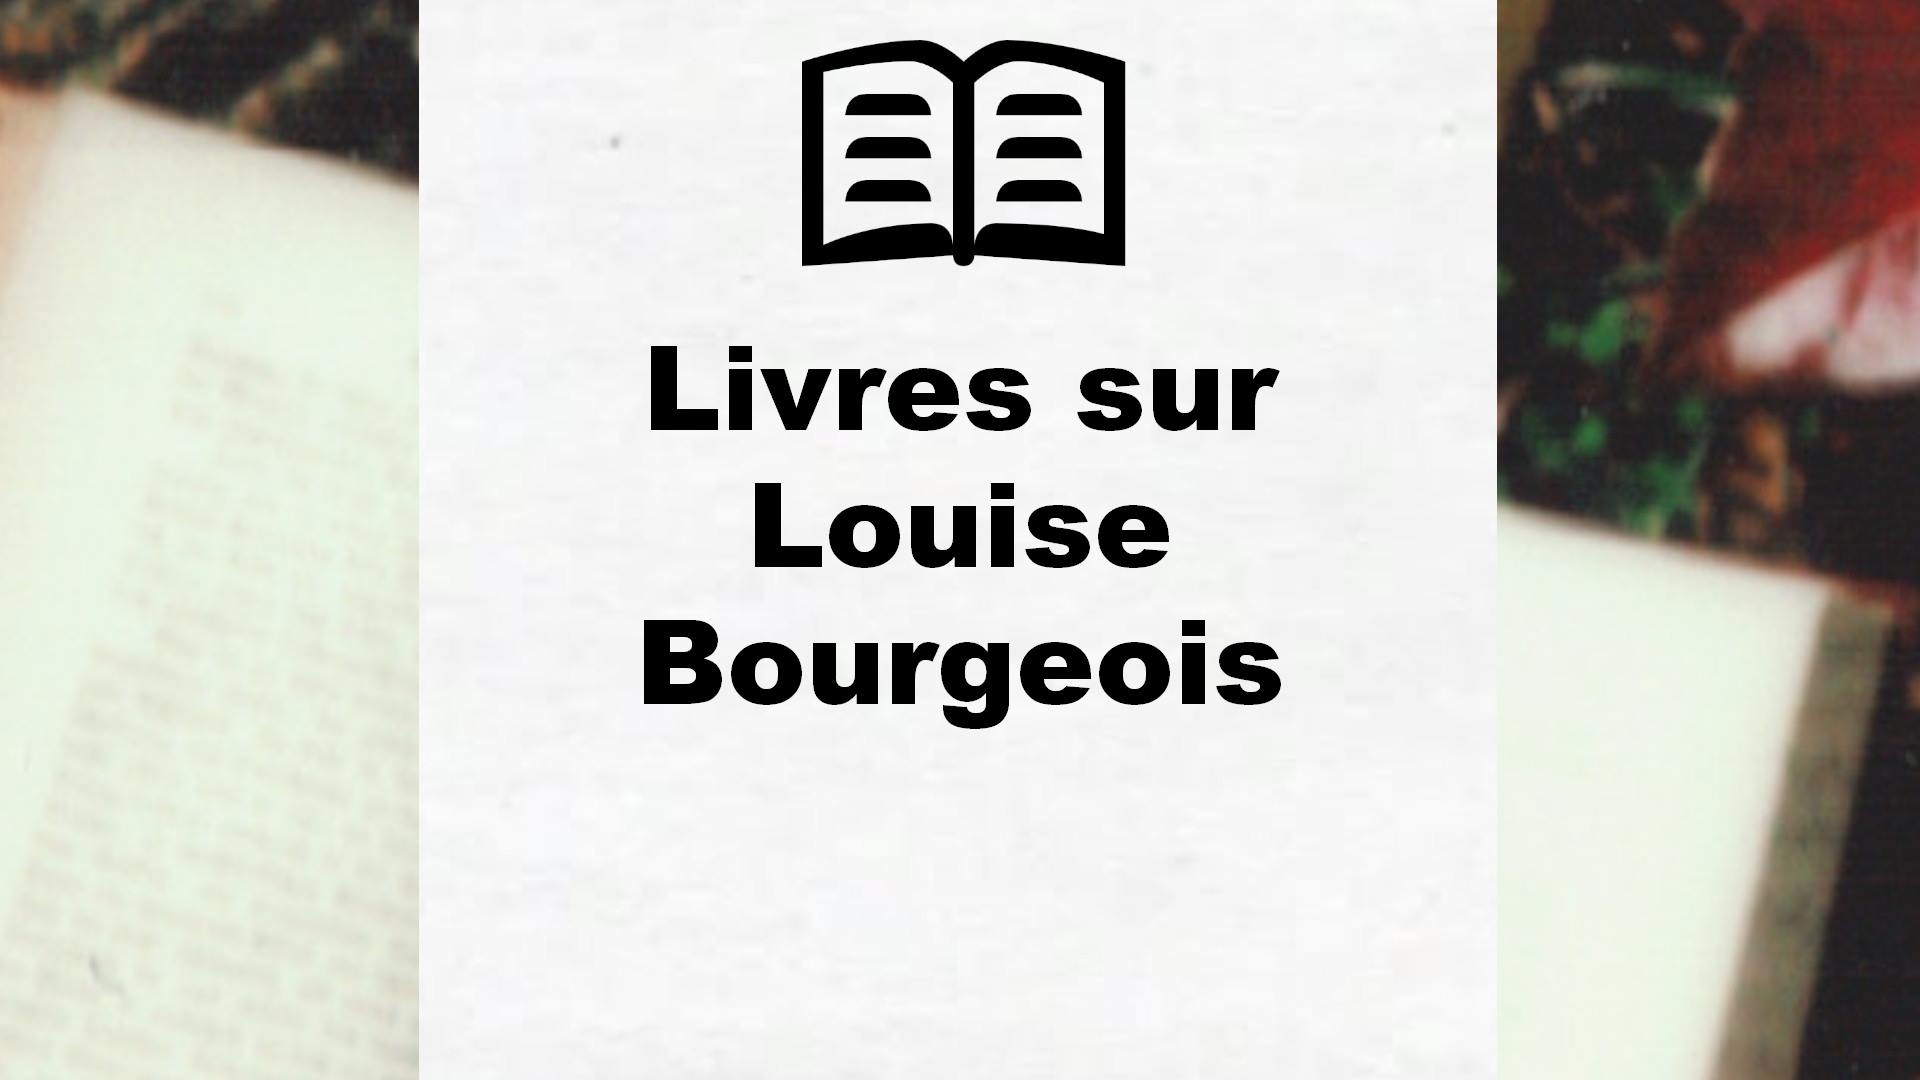 Livres sur Louise Bourgeois